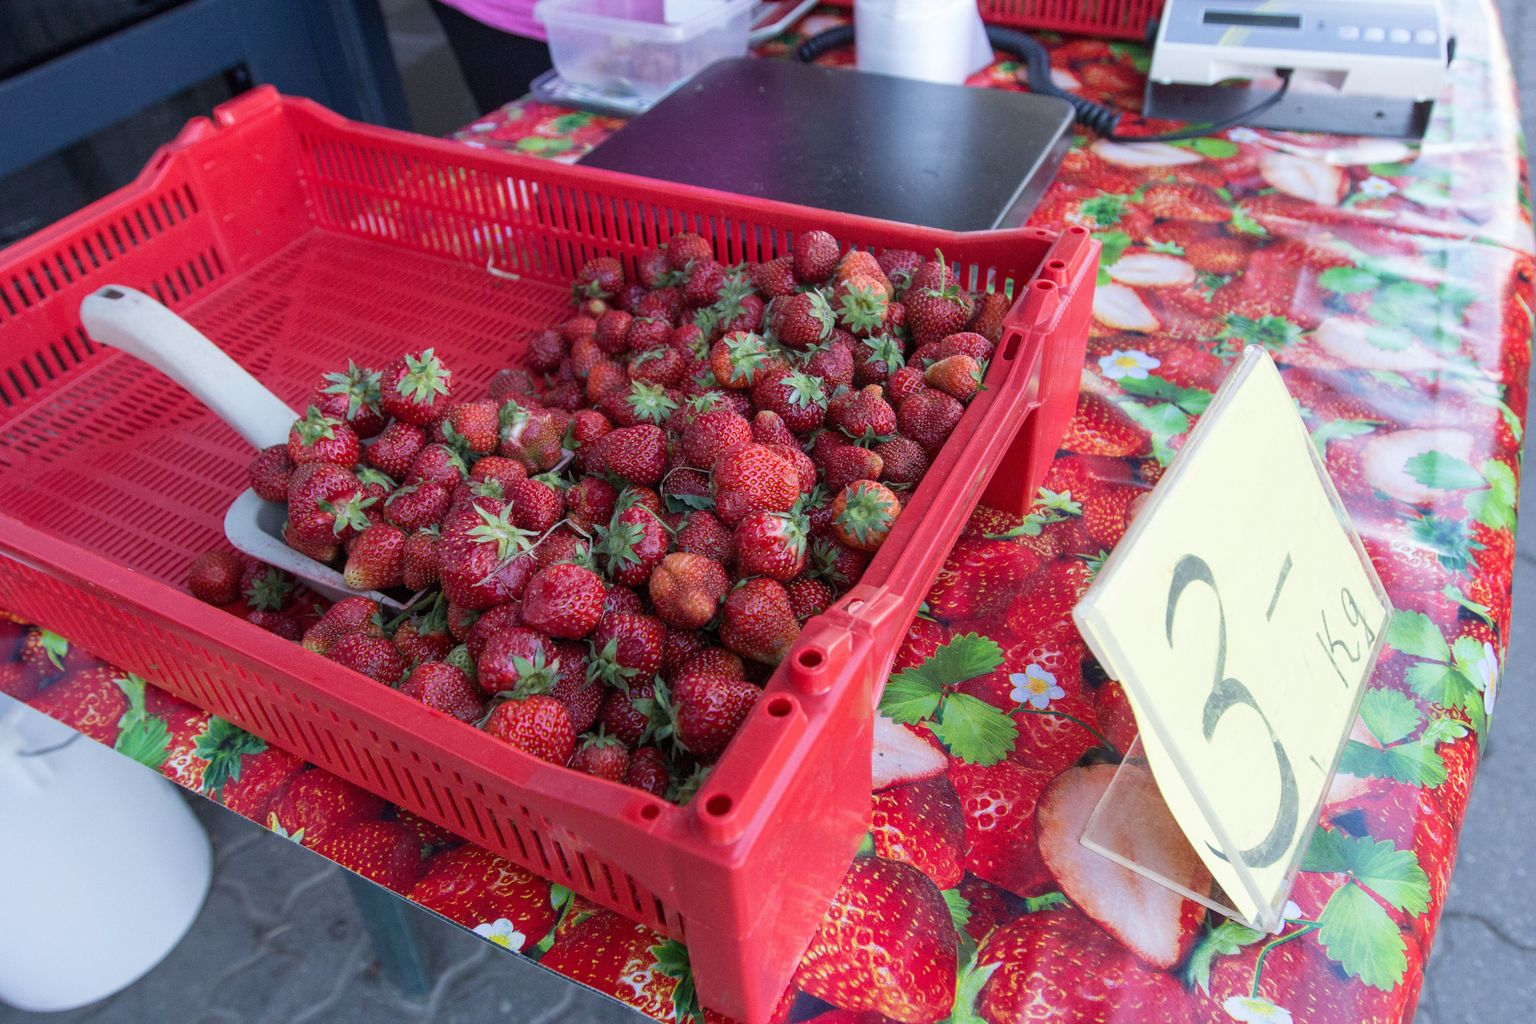 Kuni kodumaiseid maasikaid veel müügil ei ole tuleb leppida välismaistega - pildil Poola maasikad.